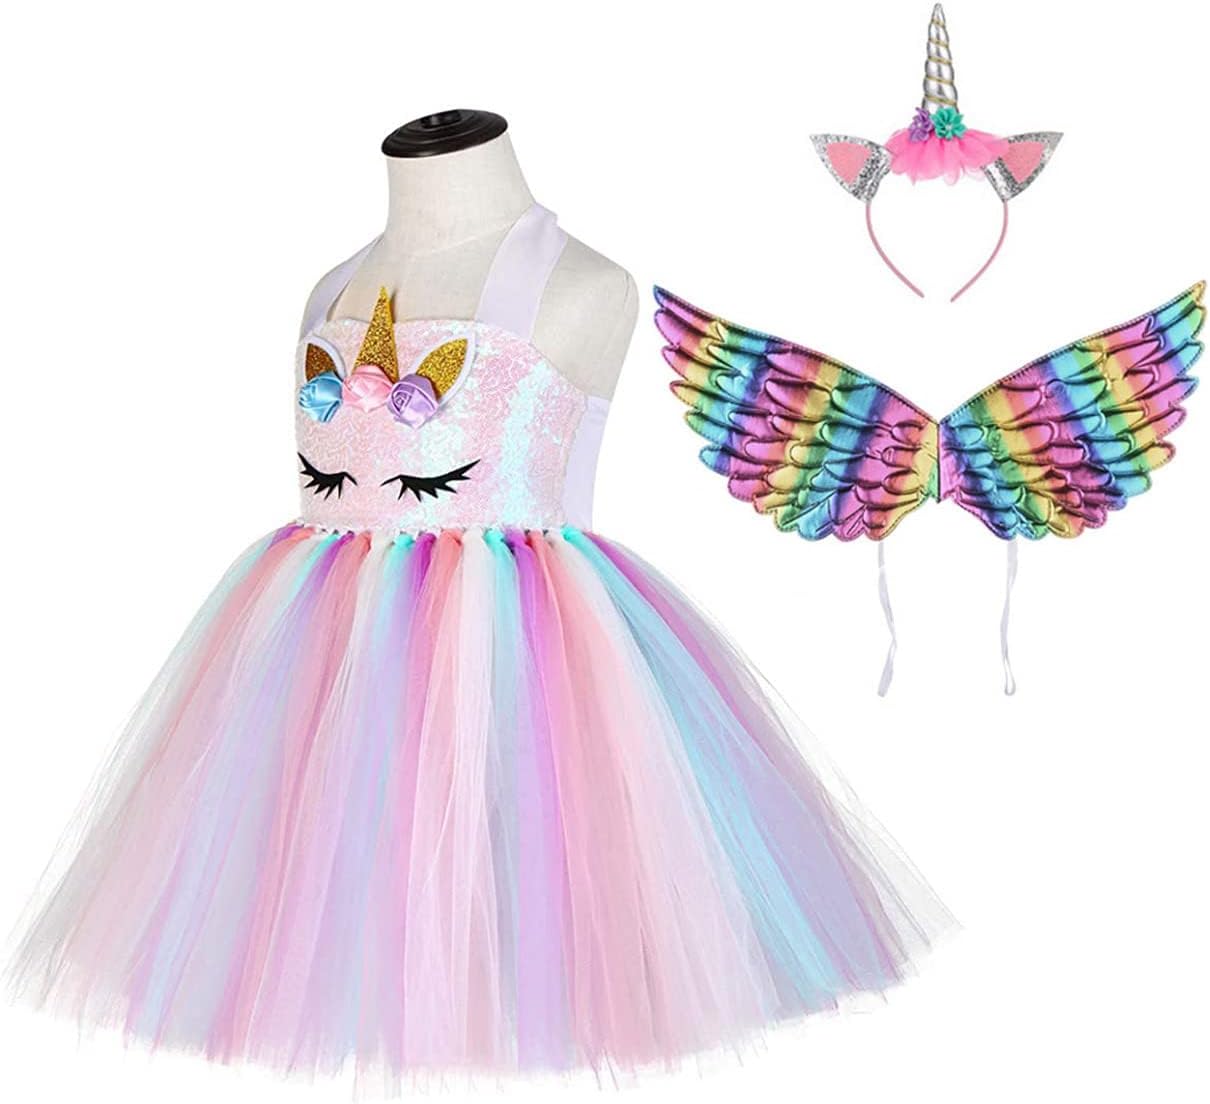 Girls Unicorn Princess Tutu Dress Unicorn Headband Wings Set for Girls Birthday Party, Carnival Unicorn Costume, Unicorn Themed Dress Up Occasions, Dress + Headband + Wings